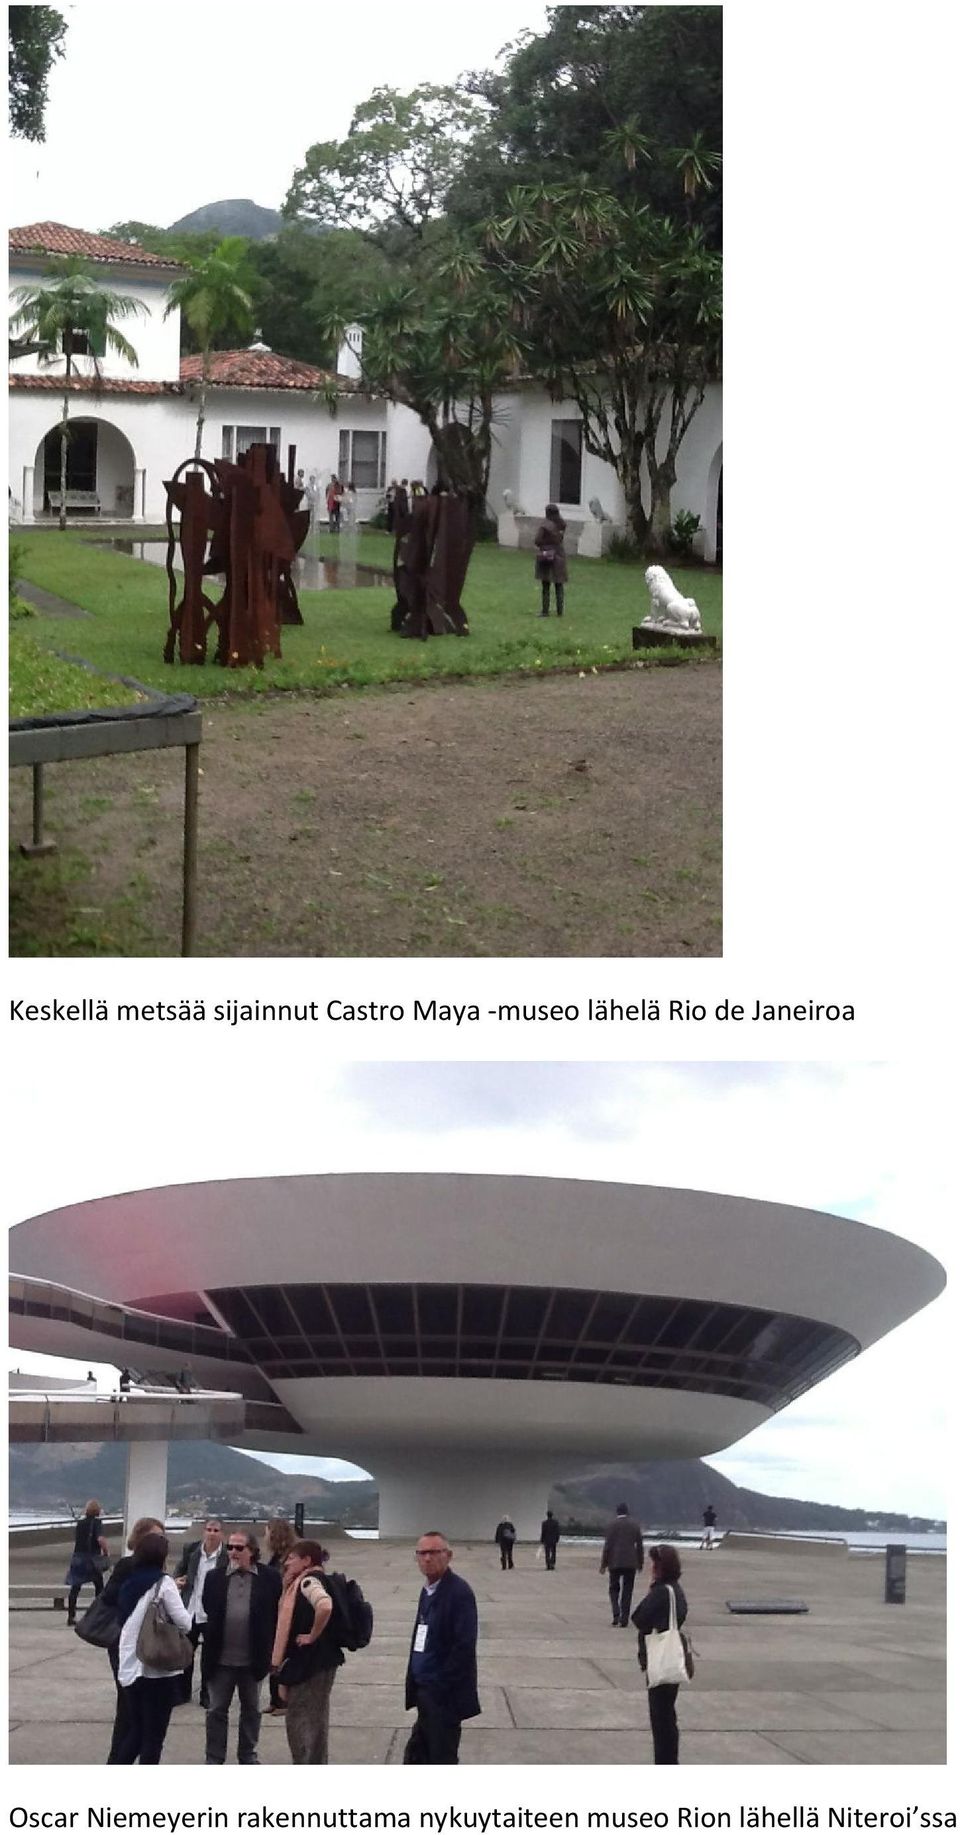 Oscar Niemeyerin rakennuttama